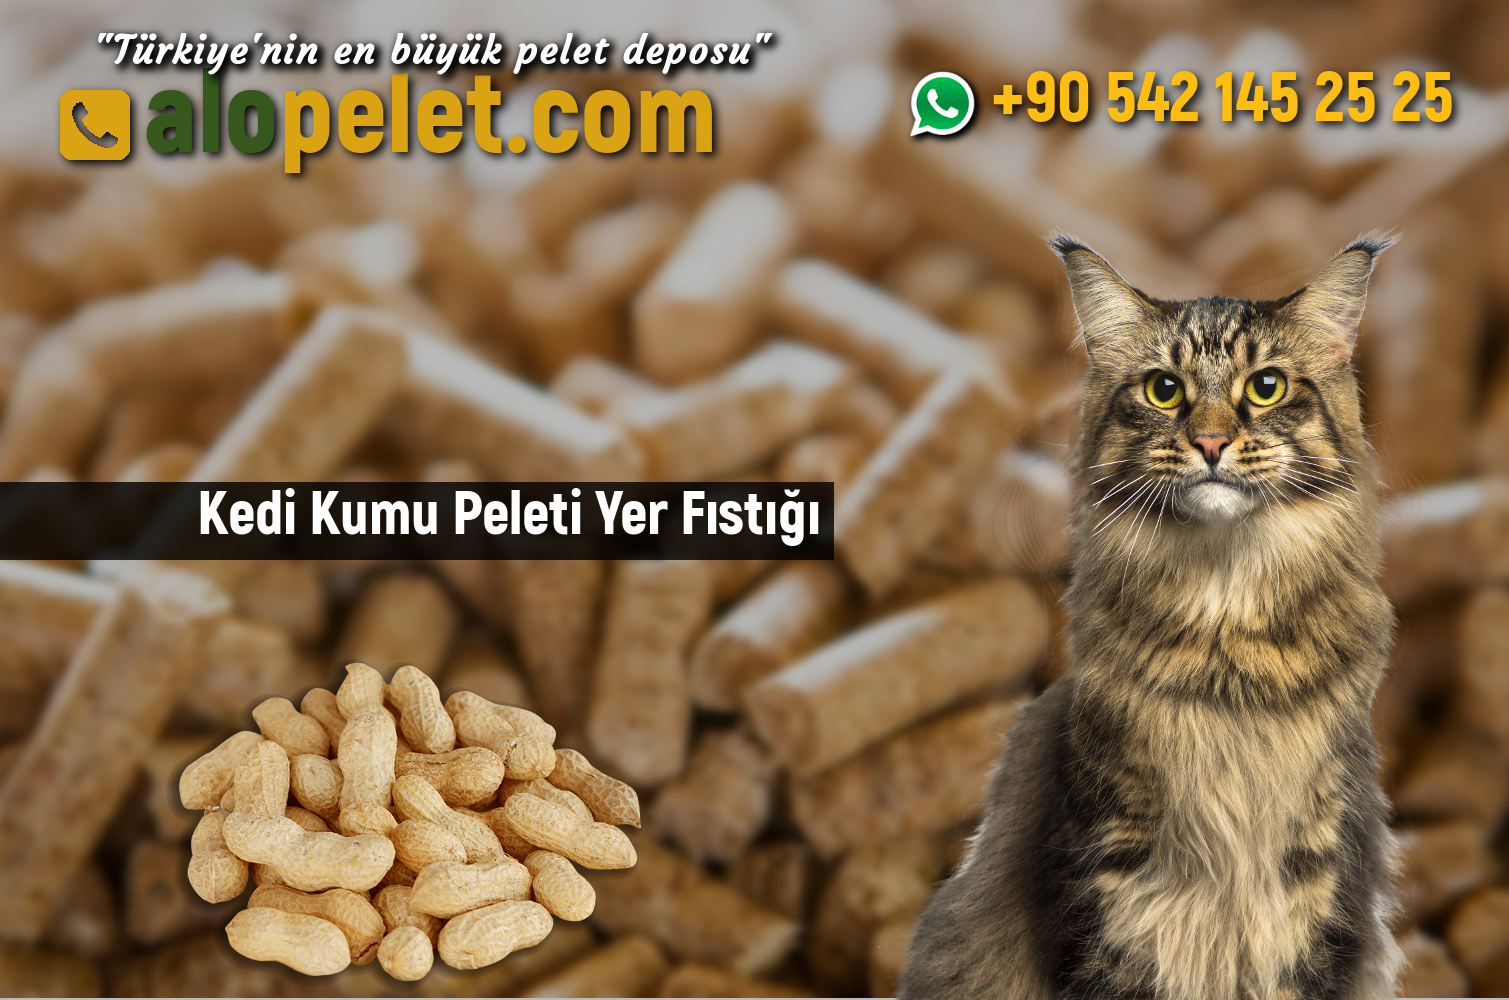 Kedi Kumu Peleti Yer Fıstığı - alopelet.com